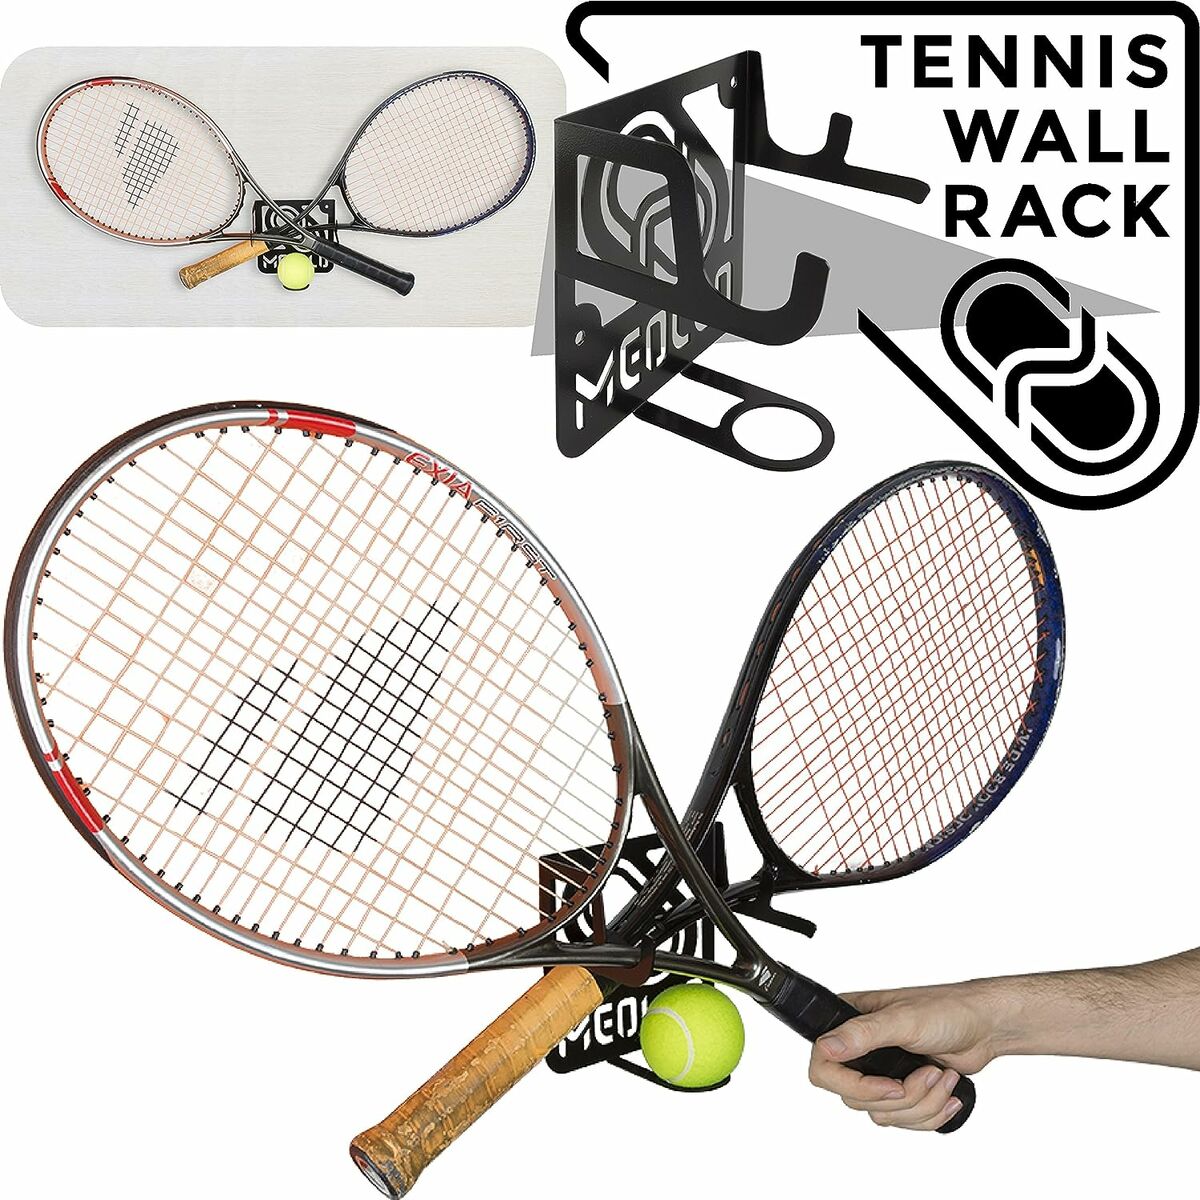 Soporte De Pared Para Raquetas De Tenis Meollo (1 Unidad)  MKP